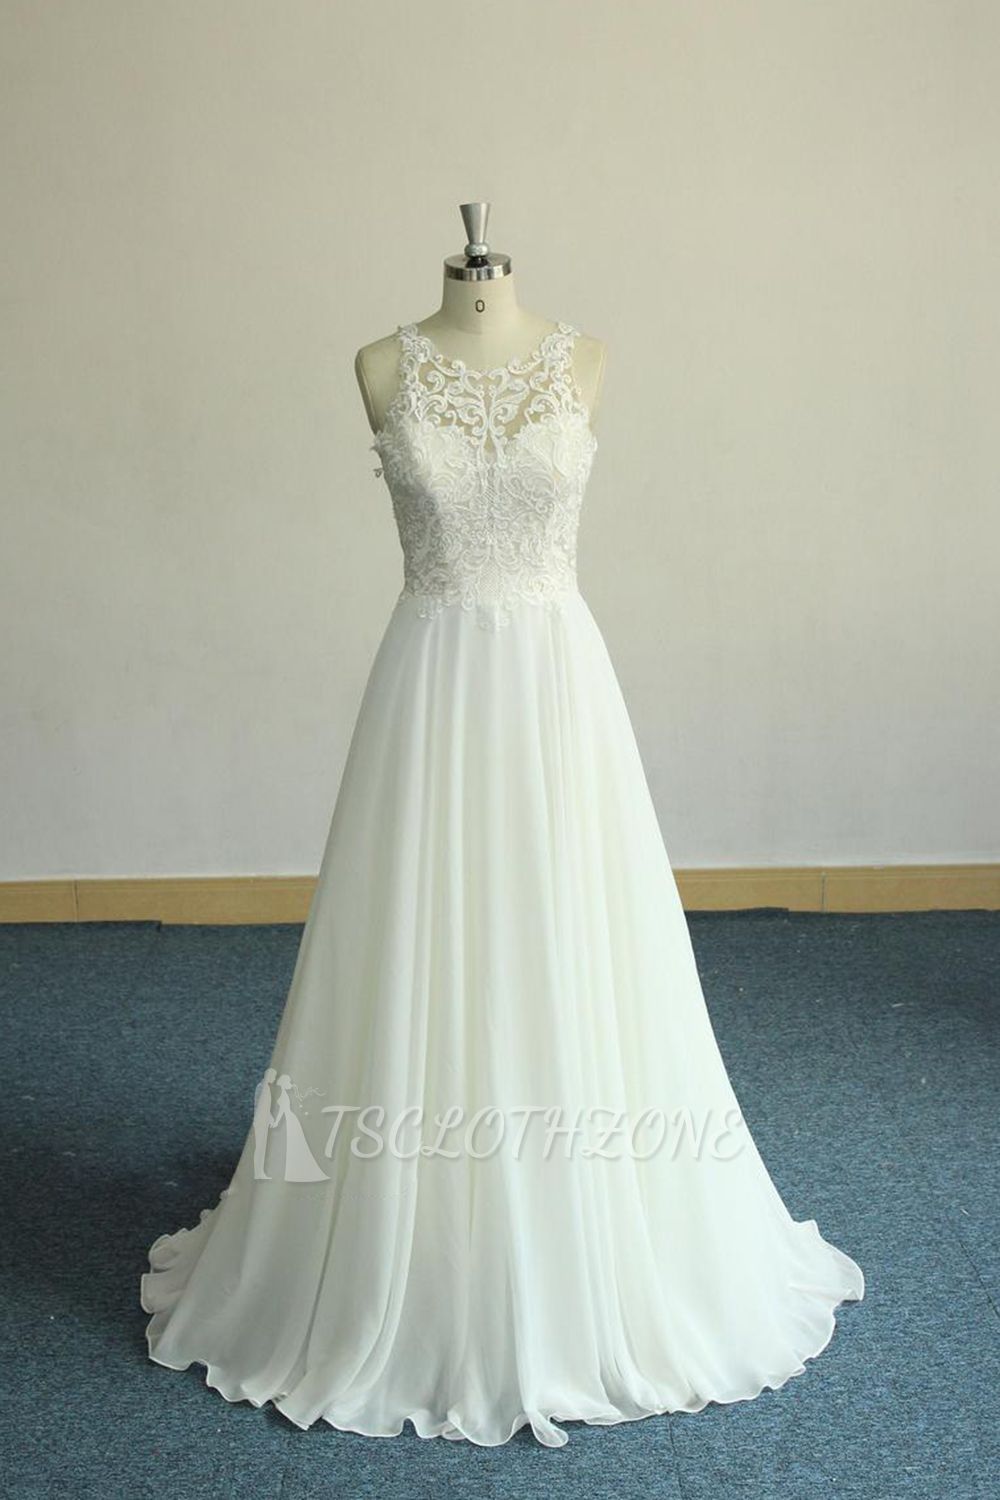 Einzigartiges weißes ärmelloses Hochzeitskleid | Applikationen Chiffon Brautkleider